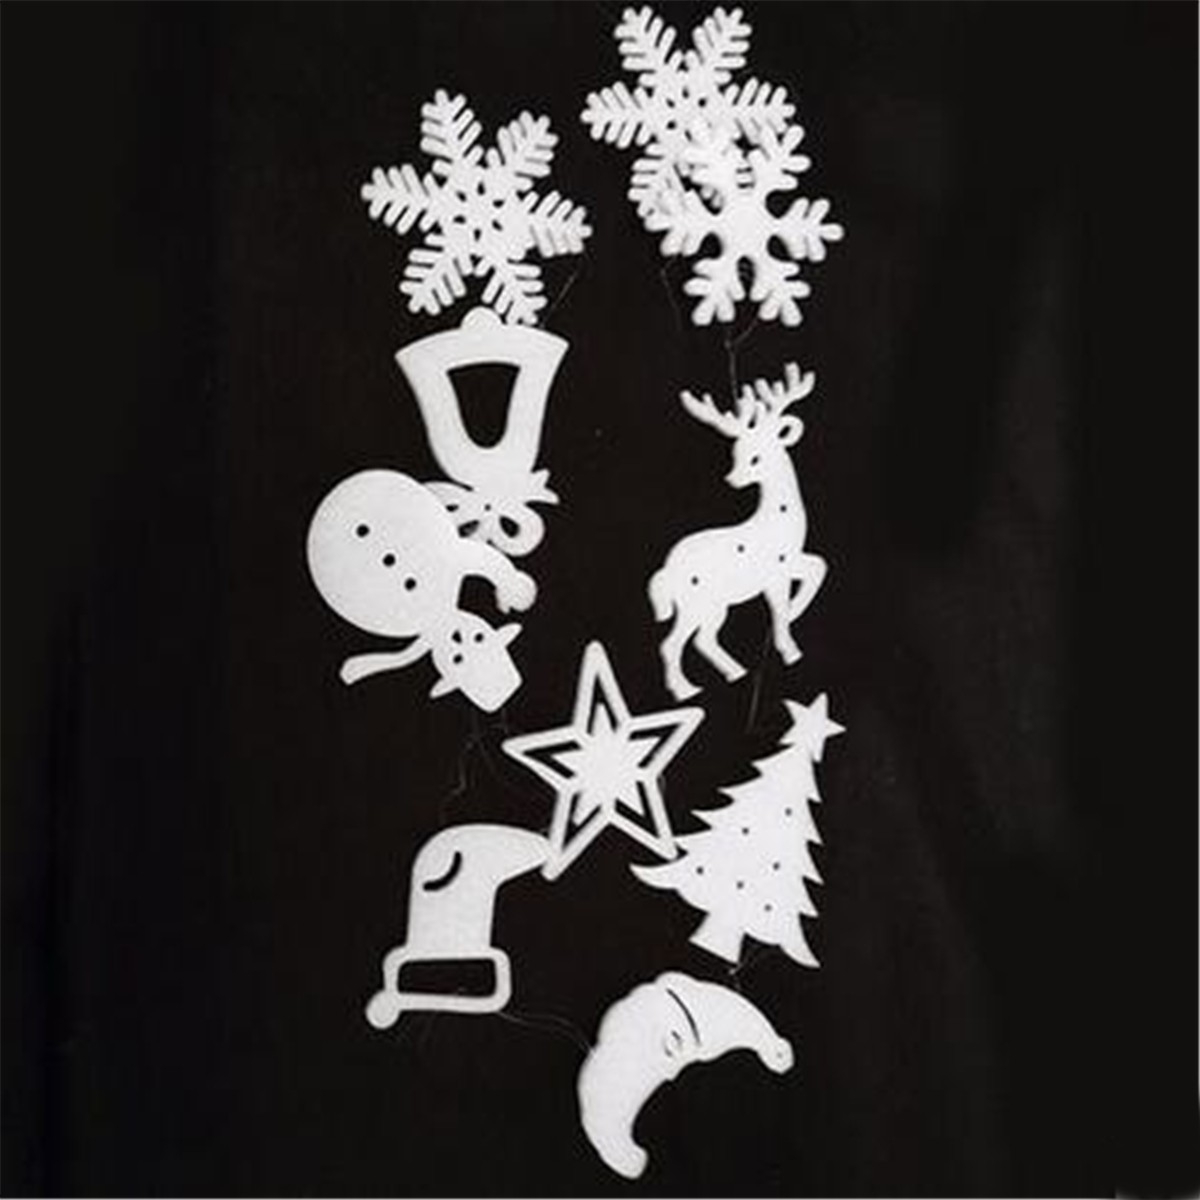 10pcs-Christmas-Xmas-Wall-Hanging-Decoration-Snowman-Santa-Clau-Snowman-Christmas-Party-Decoration-1018502